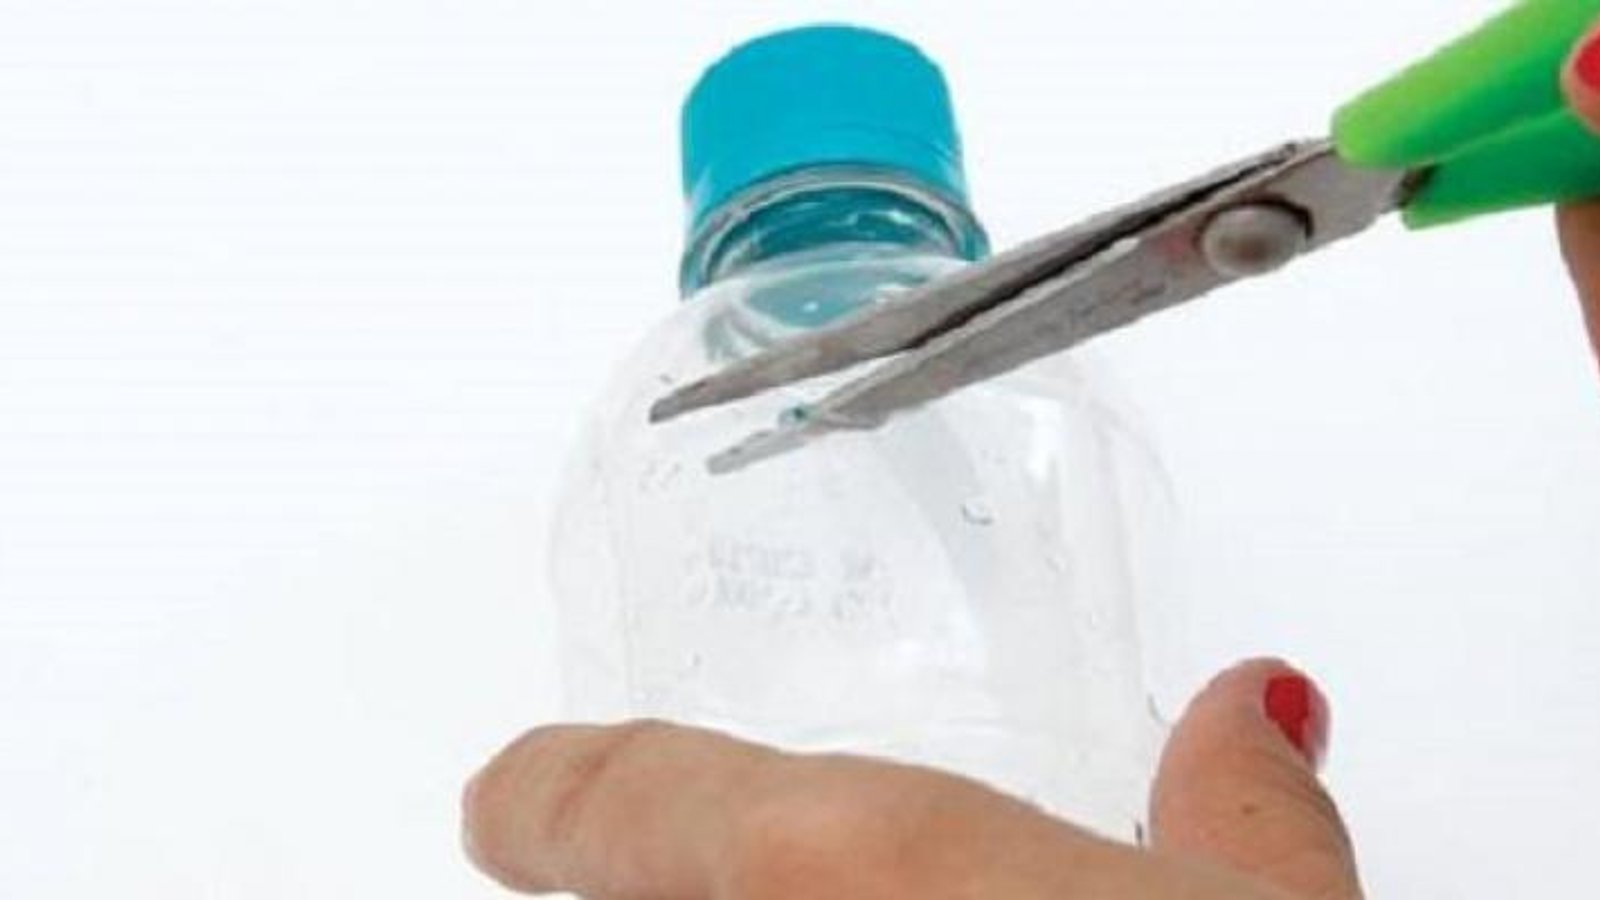 Fabriquer un magnifique porte-clef à partir d'une bouteille de plastique! Un patron gratuit!